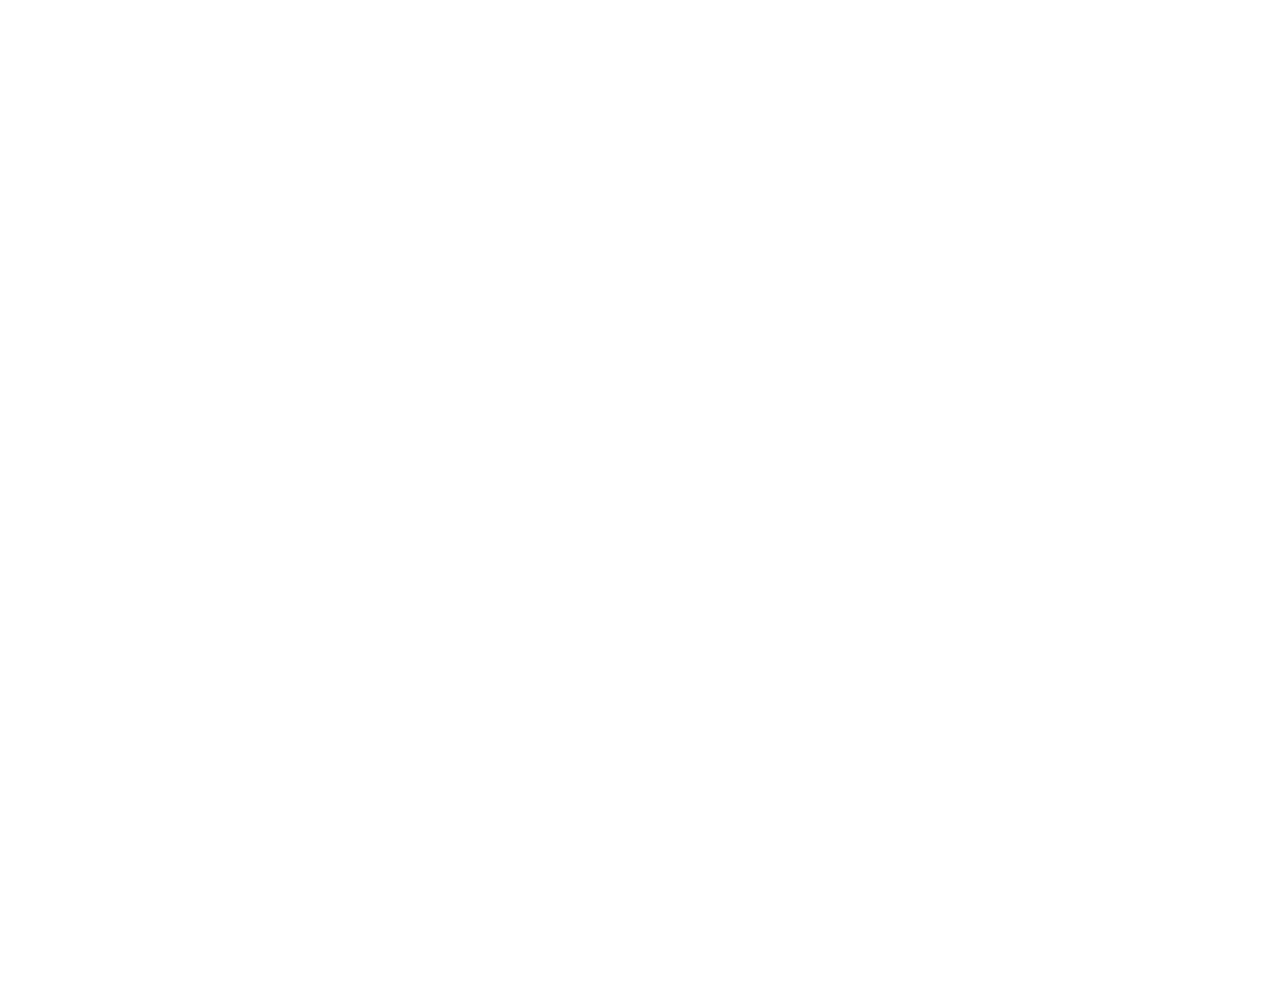 グローバルネットコアのWebソリューション